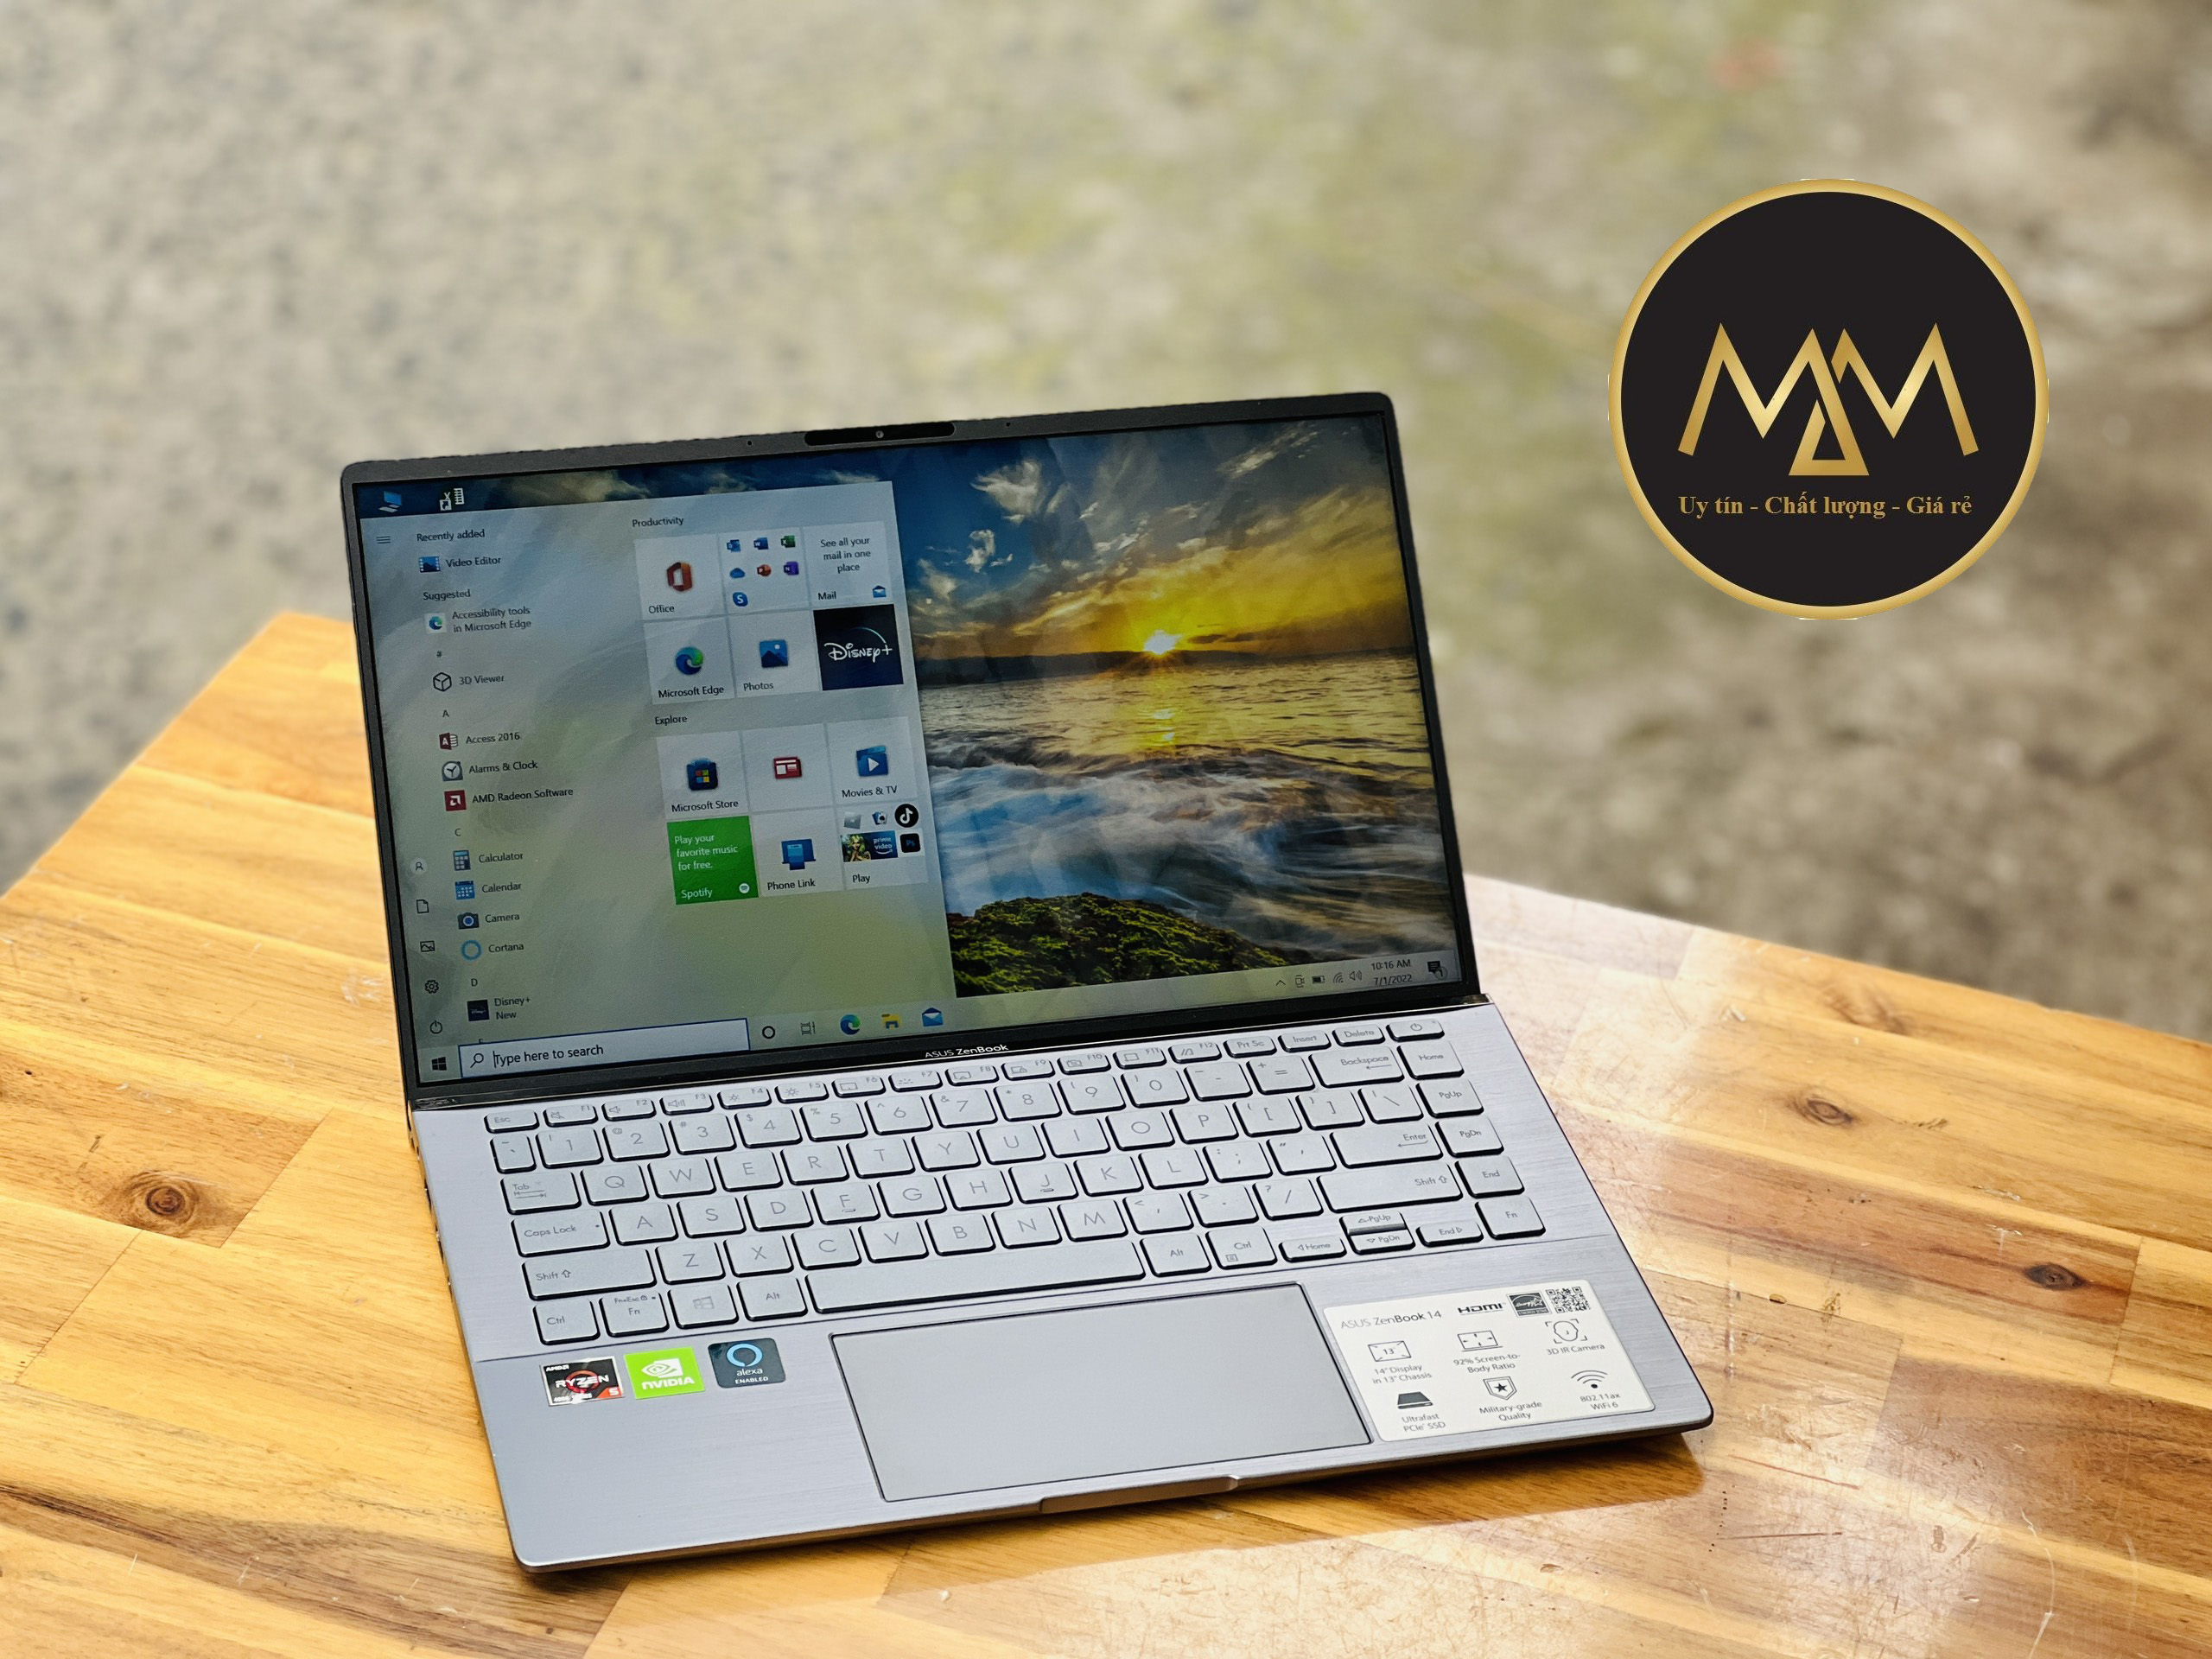 Laptop Asus Zenbook Q407iq Ryzen 5 4500/ 8G/ SSD256/ Vga MX350/ Face ID/ LED PHÍM/ Vỏ Nhôm/ 14inch/ Giá rẻ